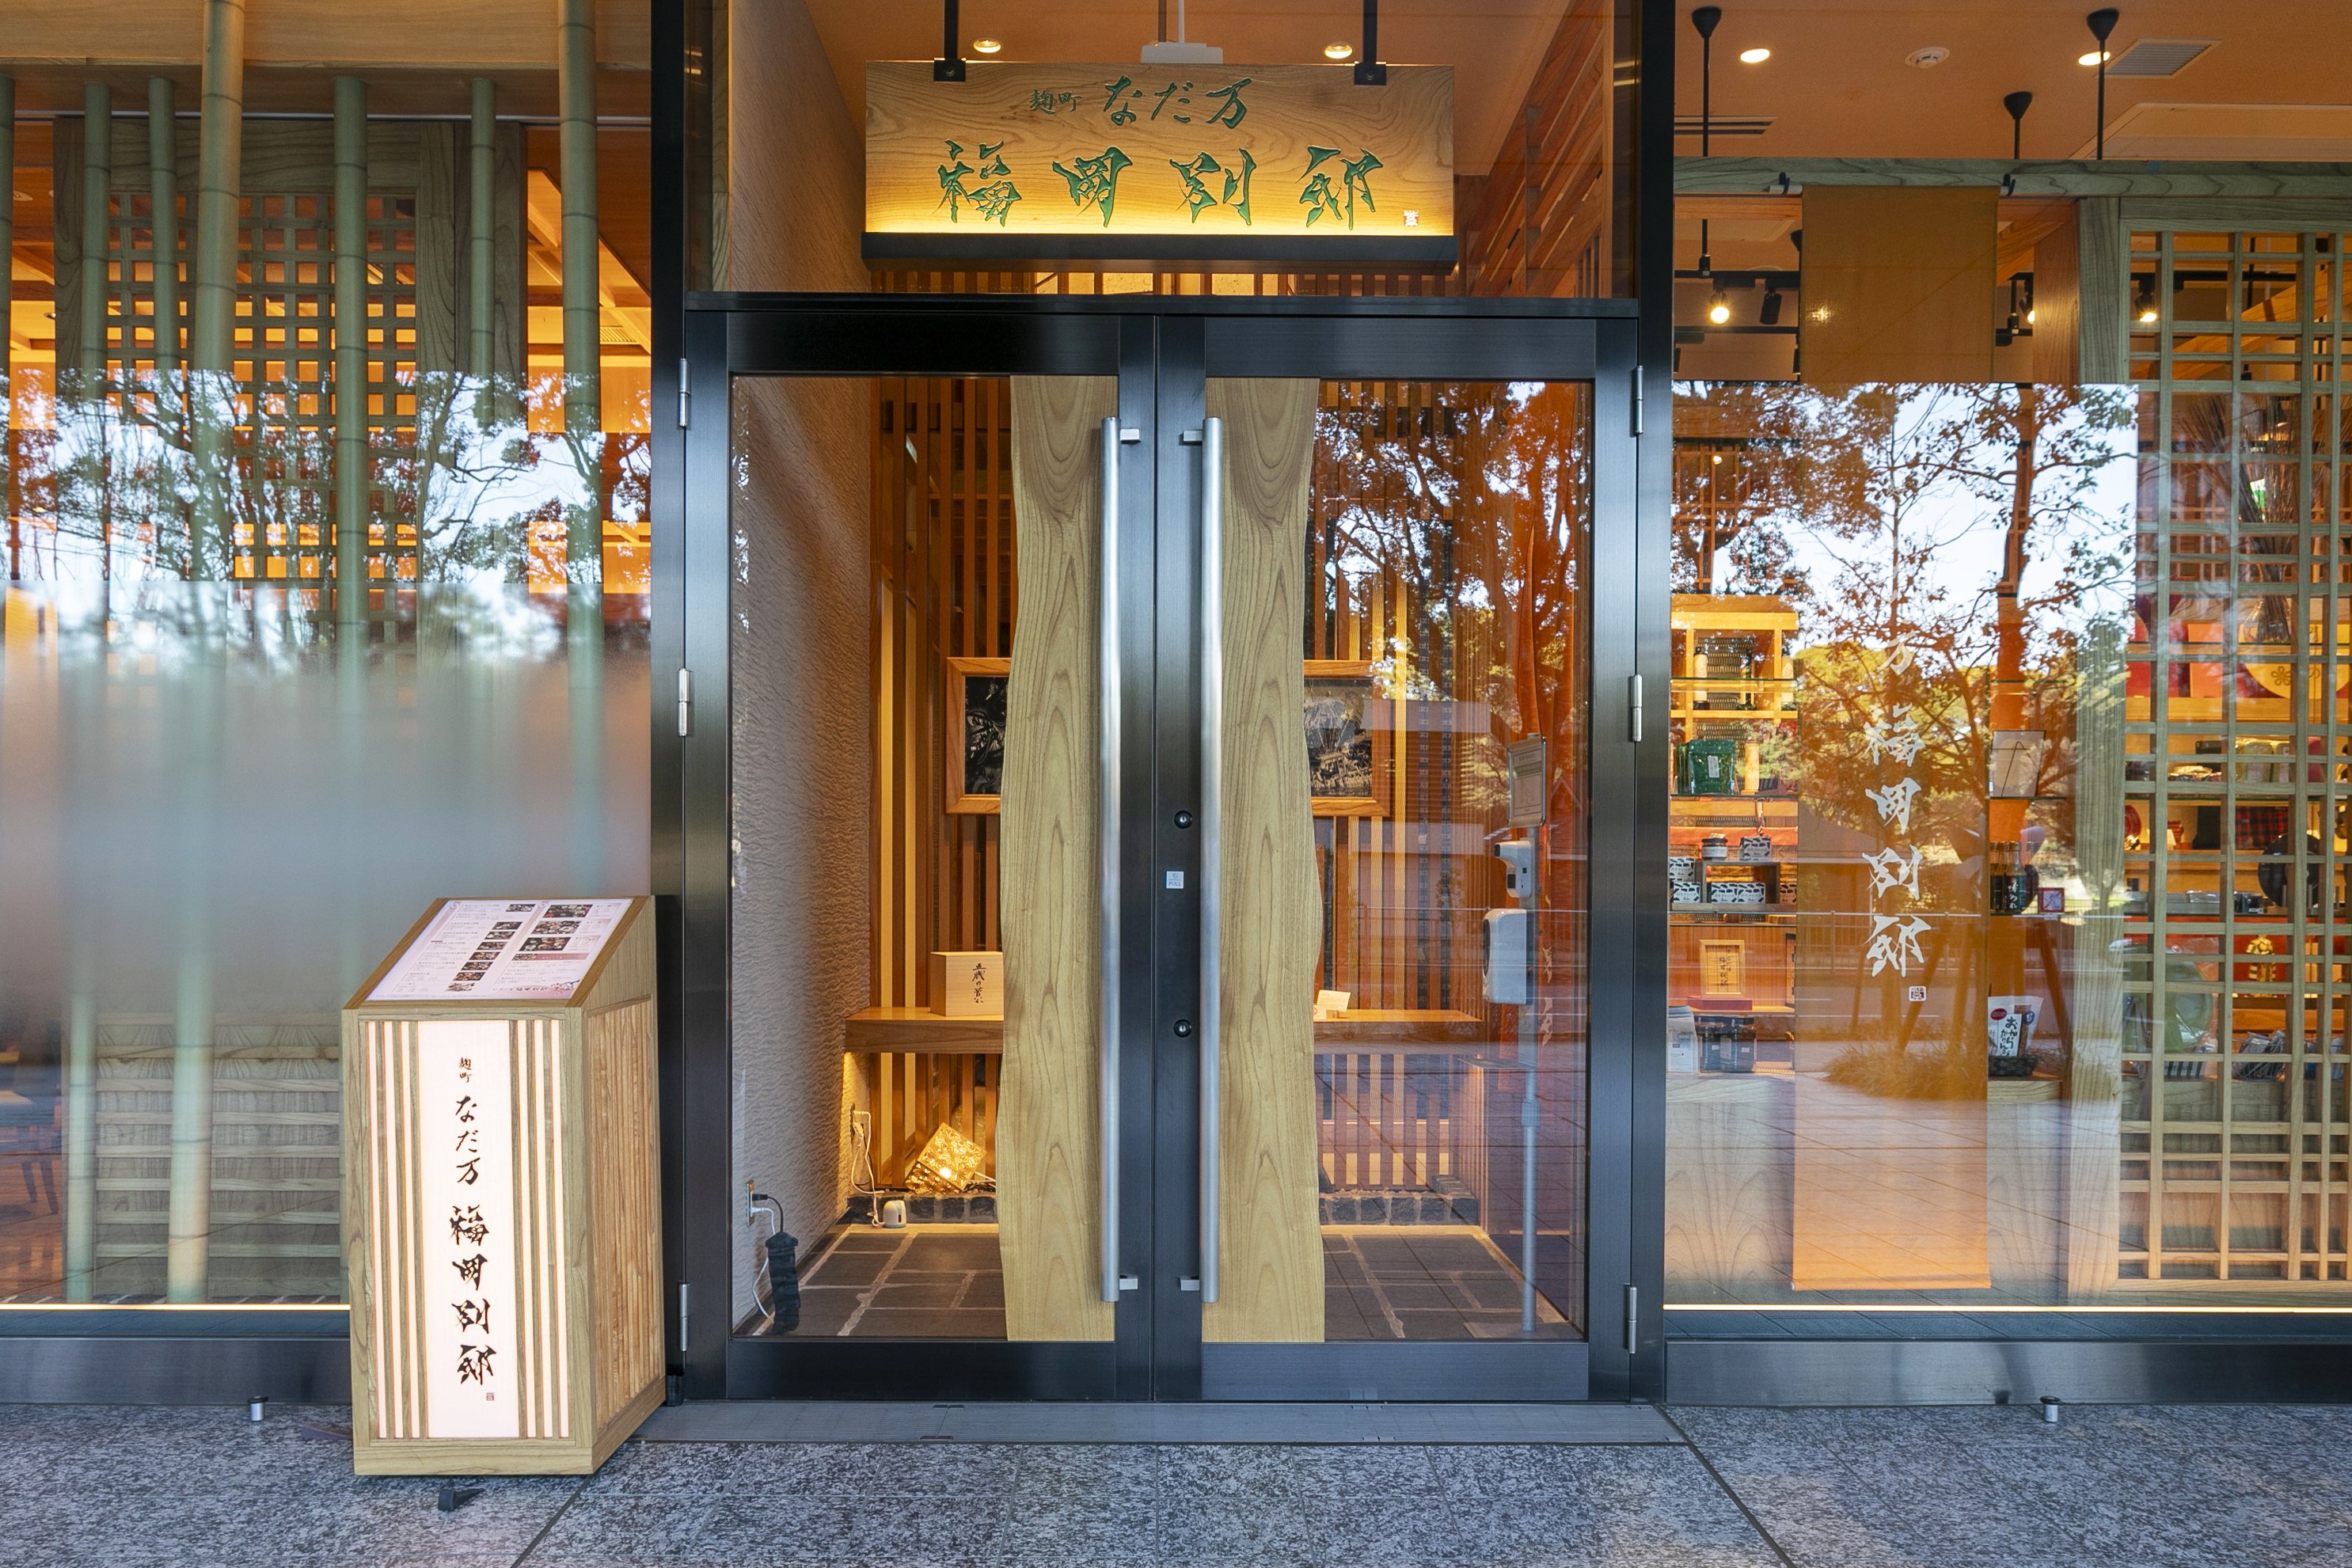 入り口に掛かる店名「福岡別邸」は、書家・紫舟（ししゅう）さんの筆